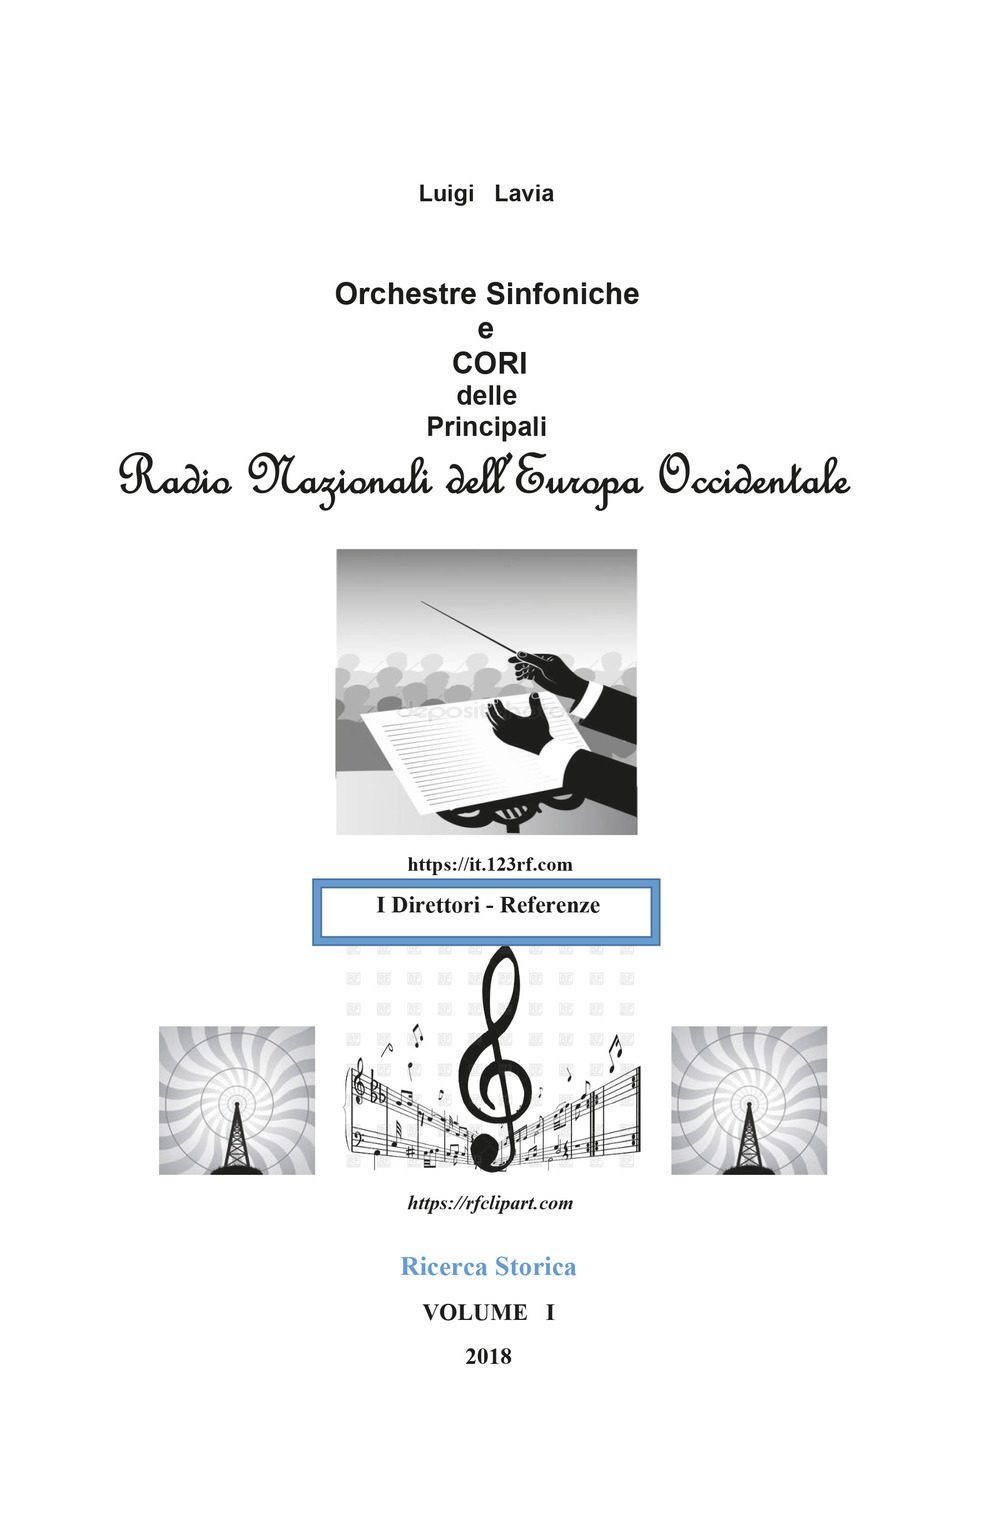 Ricerca storica. Vol. 1: Le orchestre sinfoniche e cori delle principali Radio Nazionali dell'Europa Occidentale